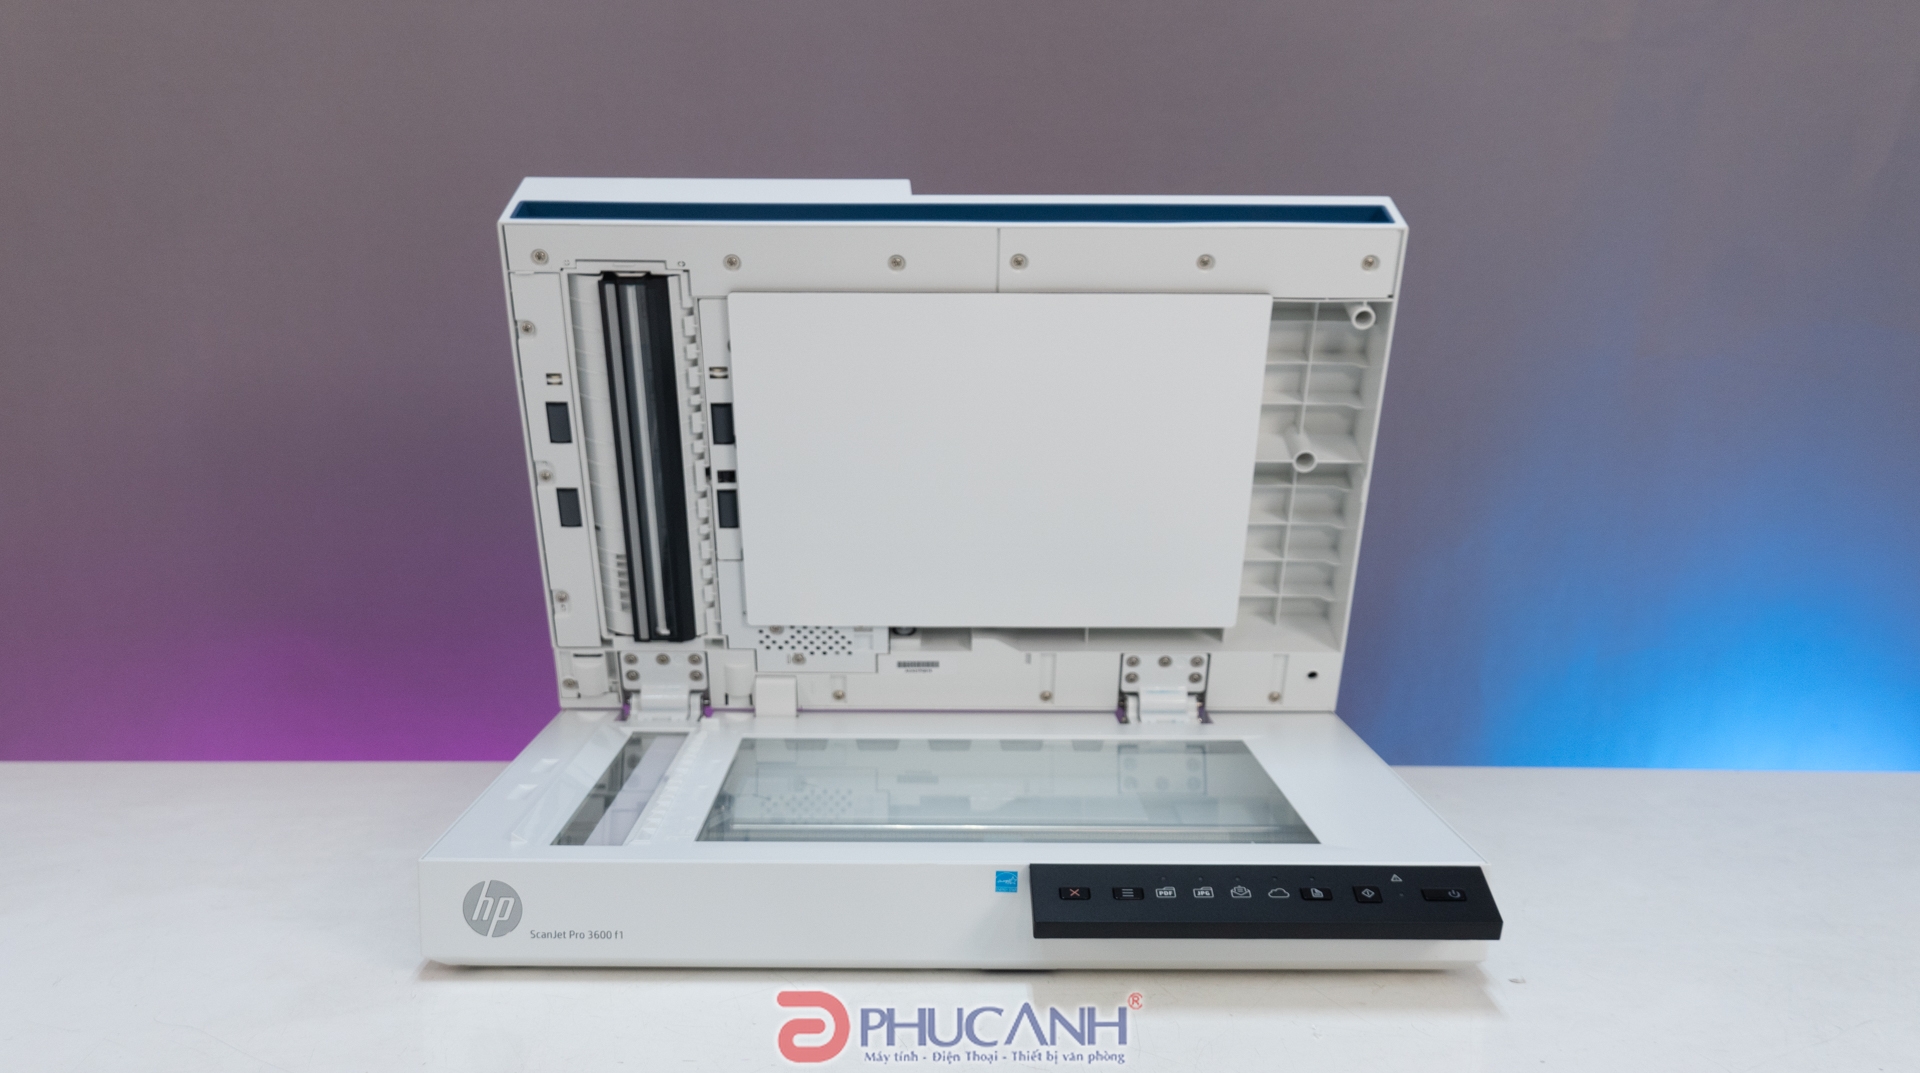 [Đánh giá] Máy Scan HP ScanJet Pro 3600 F1 so với HP ScanJet Pro 2600 F1: có nên nâng cấp?